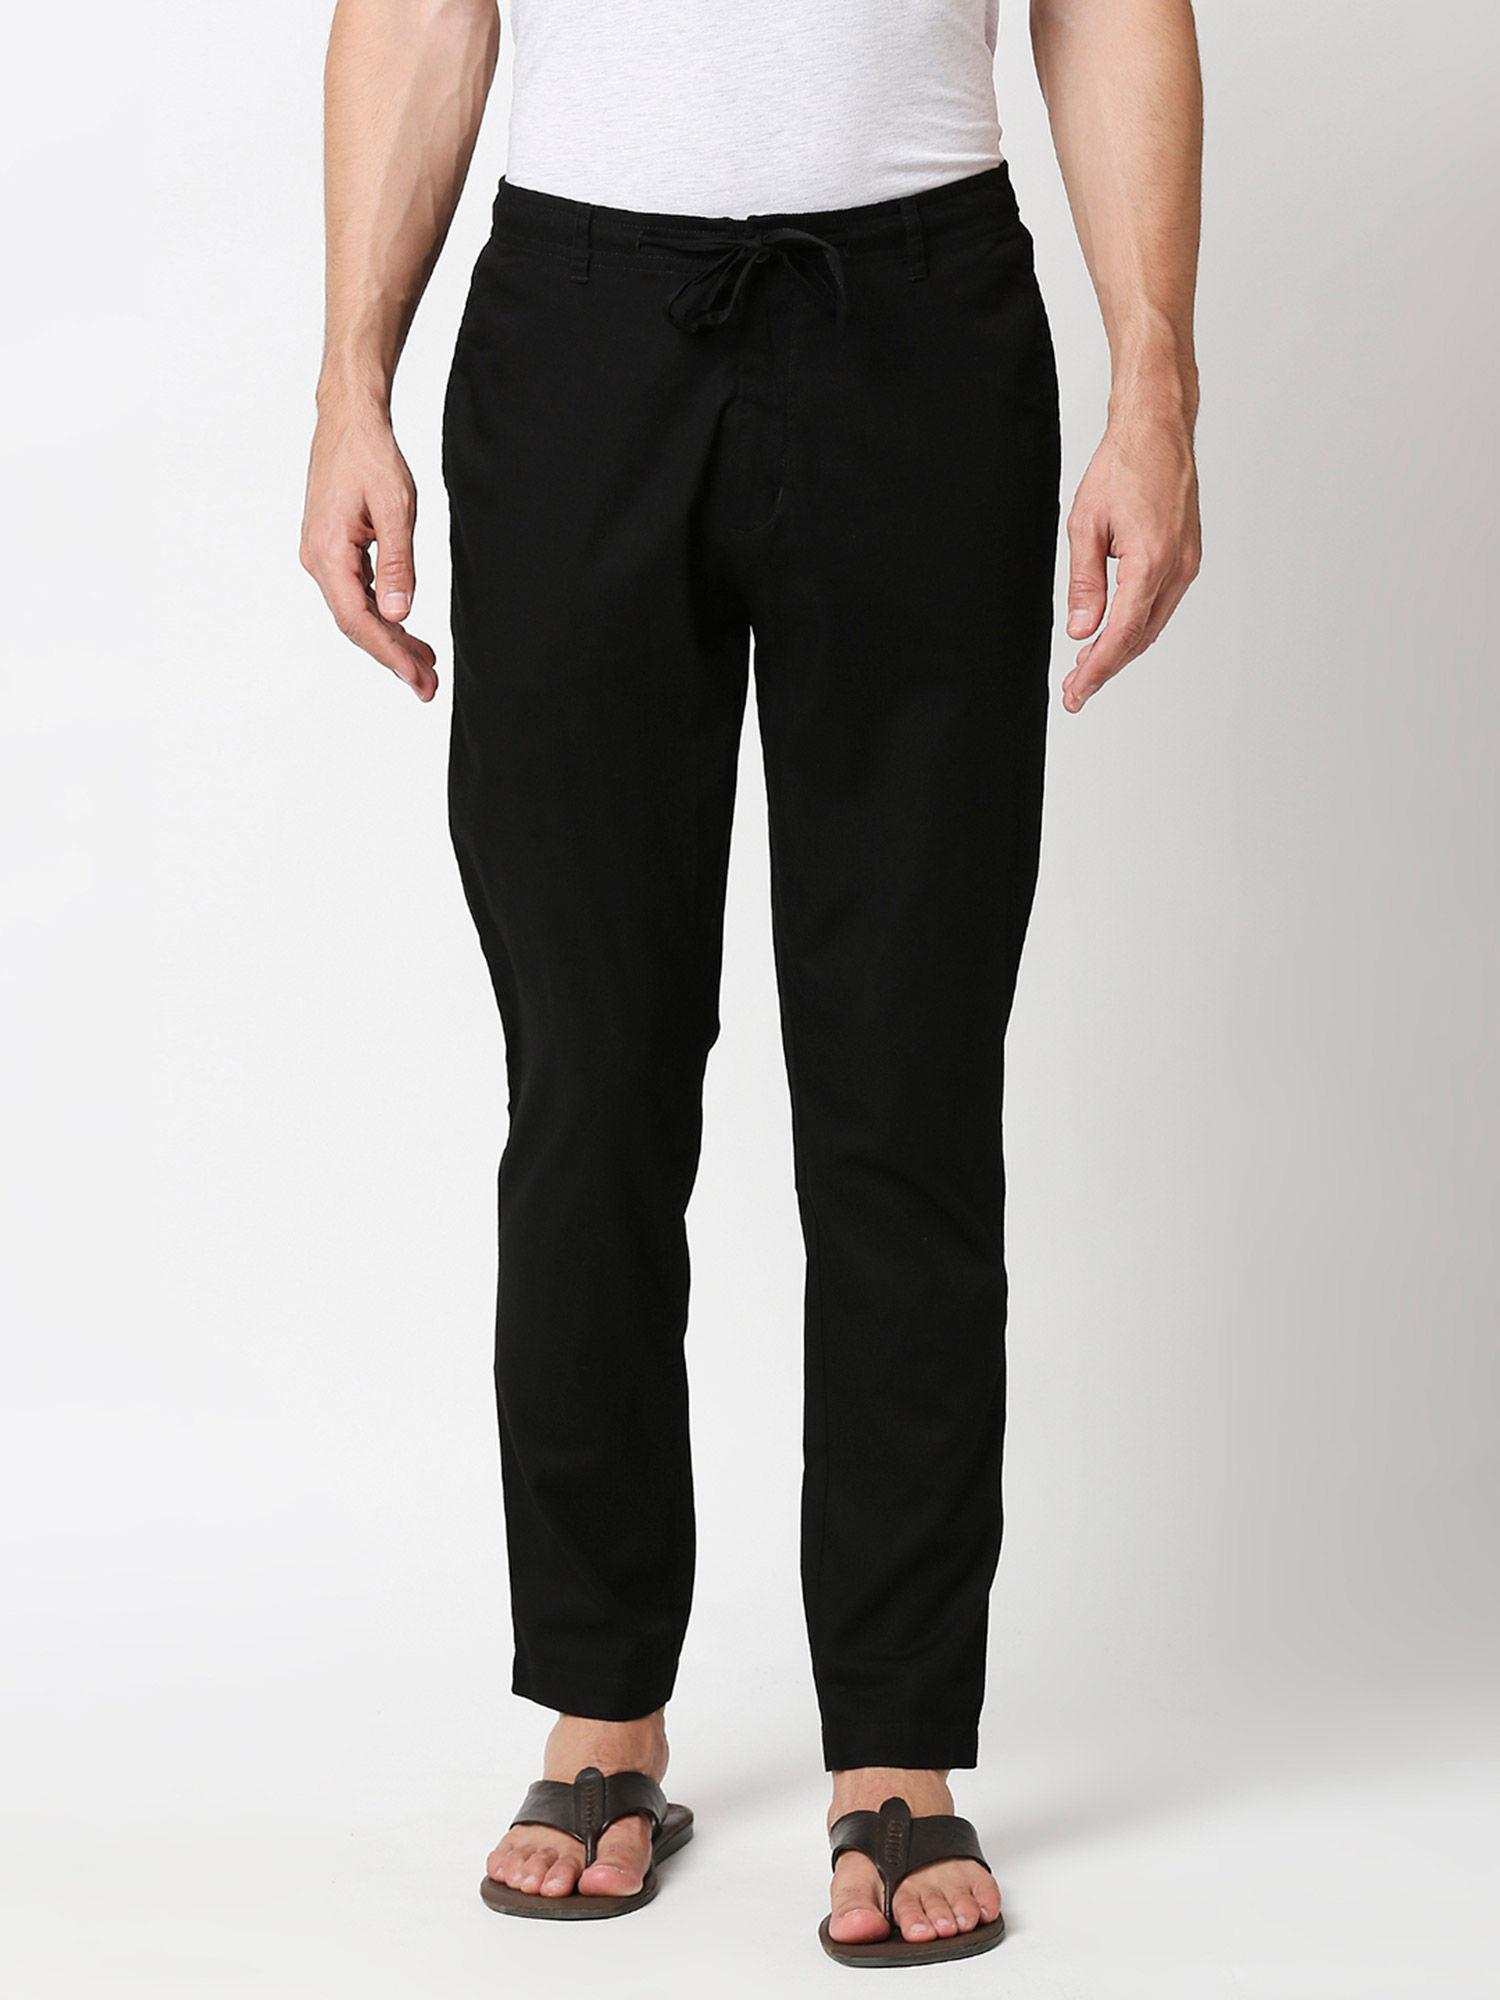 jet black casual cotton trouser